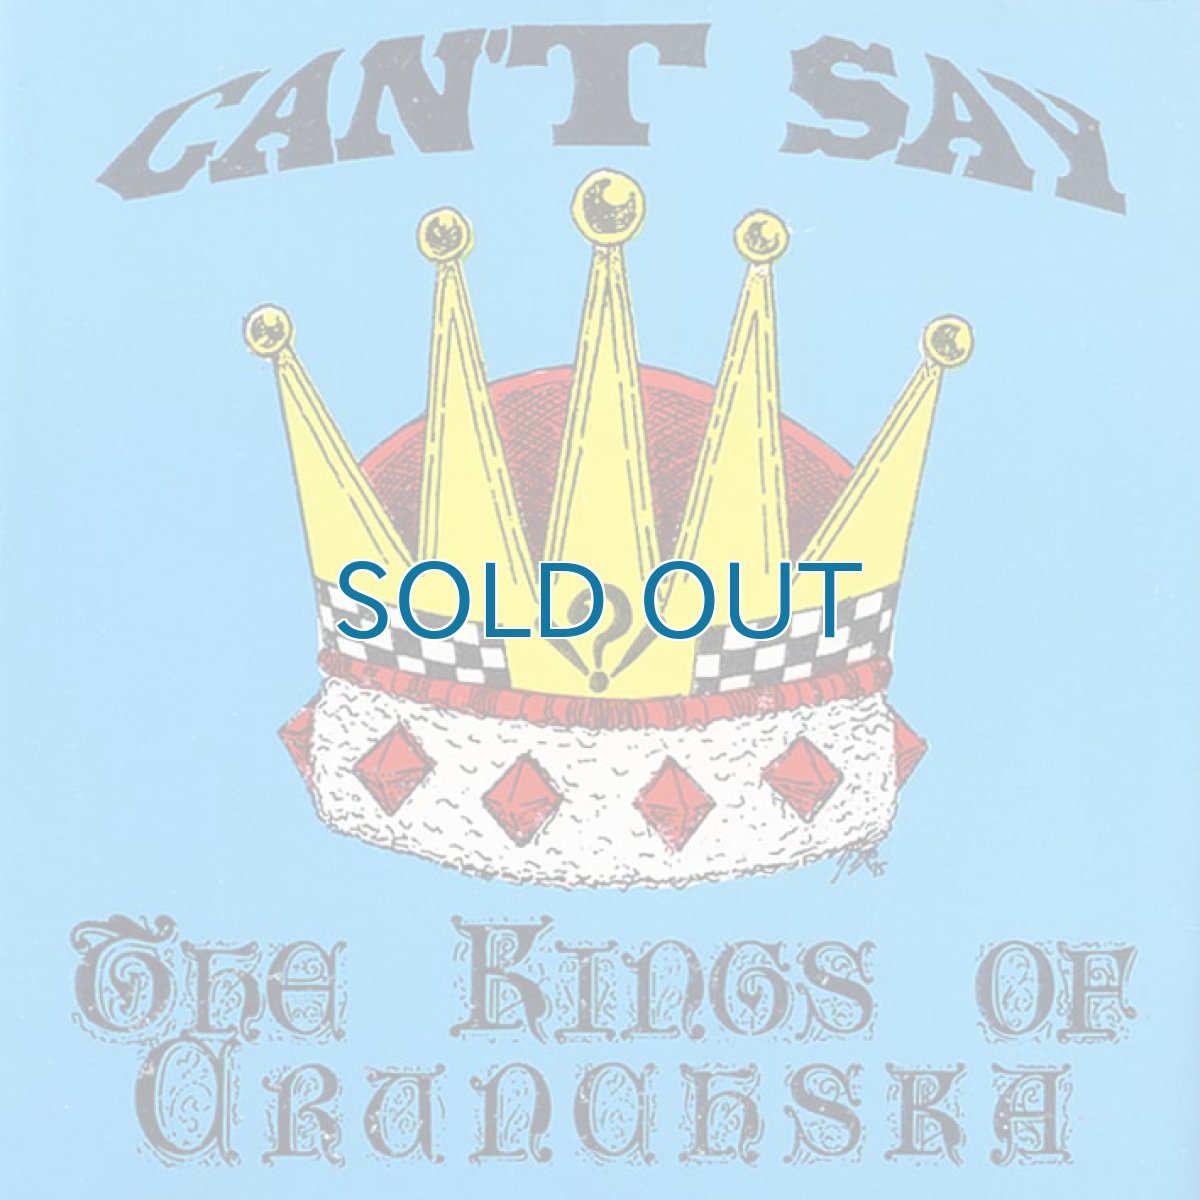 画像1: Can't Say / The Kings Of Crunch Ska (1)